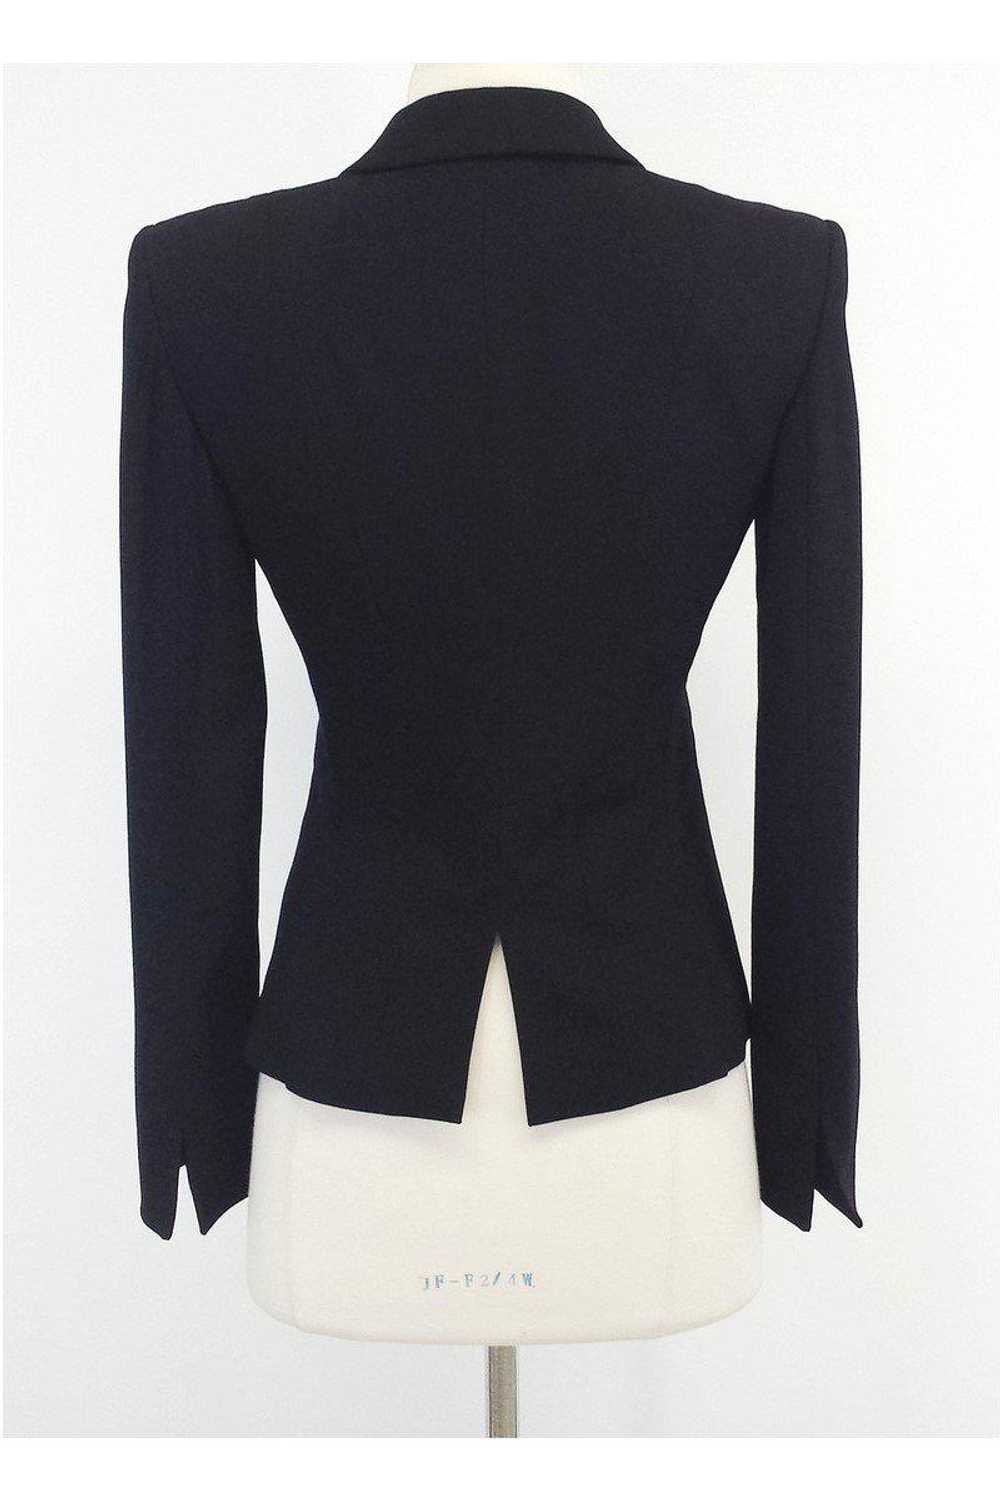 Armani Collezioni - Black Wool Blend Blazer Sz 2 - image 3